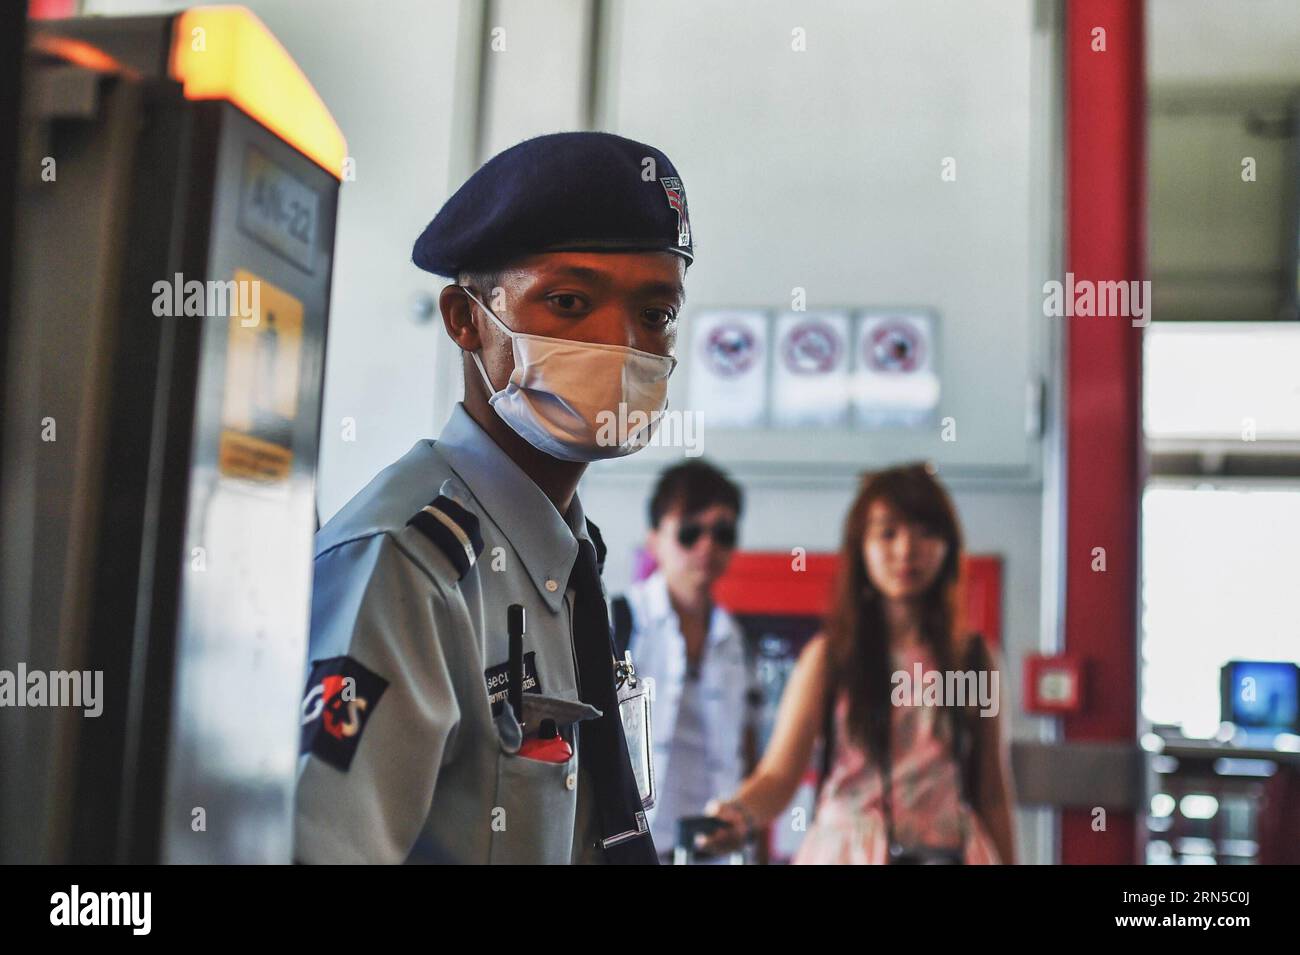 (150620) -- BANGKOK, le 20 juin 2015 -- Un employé porte un masque facial alors qu'il patrouille dans la station Siam du BTS Skytrain à Bangkok, Thaïlande, le 20 juin 2015. Le ministère de la Santé publique de Thaïlande a confirmé jeudi le premier cas de syndrome respiratoire du Moyen-Orient (mers). A Bangkok, la capitale du pays et un centre de transport international, les citoyens et les voyageurs ont commencé à adopter des méthodes préventives telles que le port de masques protecteurs pour le visage. THAILAND-BANGKOK-mers-DISEASE-PREVENTION LixMangmang PUBLICATIONxNOTxINxCHN 150620 Bangkok juin 20 2015 un membre du personnel porte un masque facial comme lui Banque D'Images